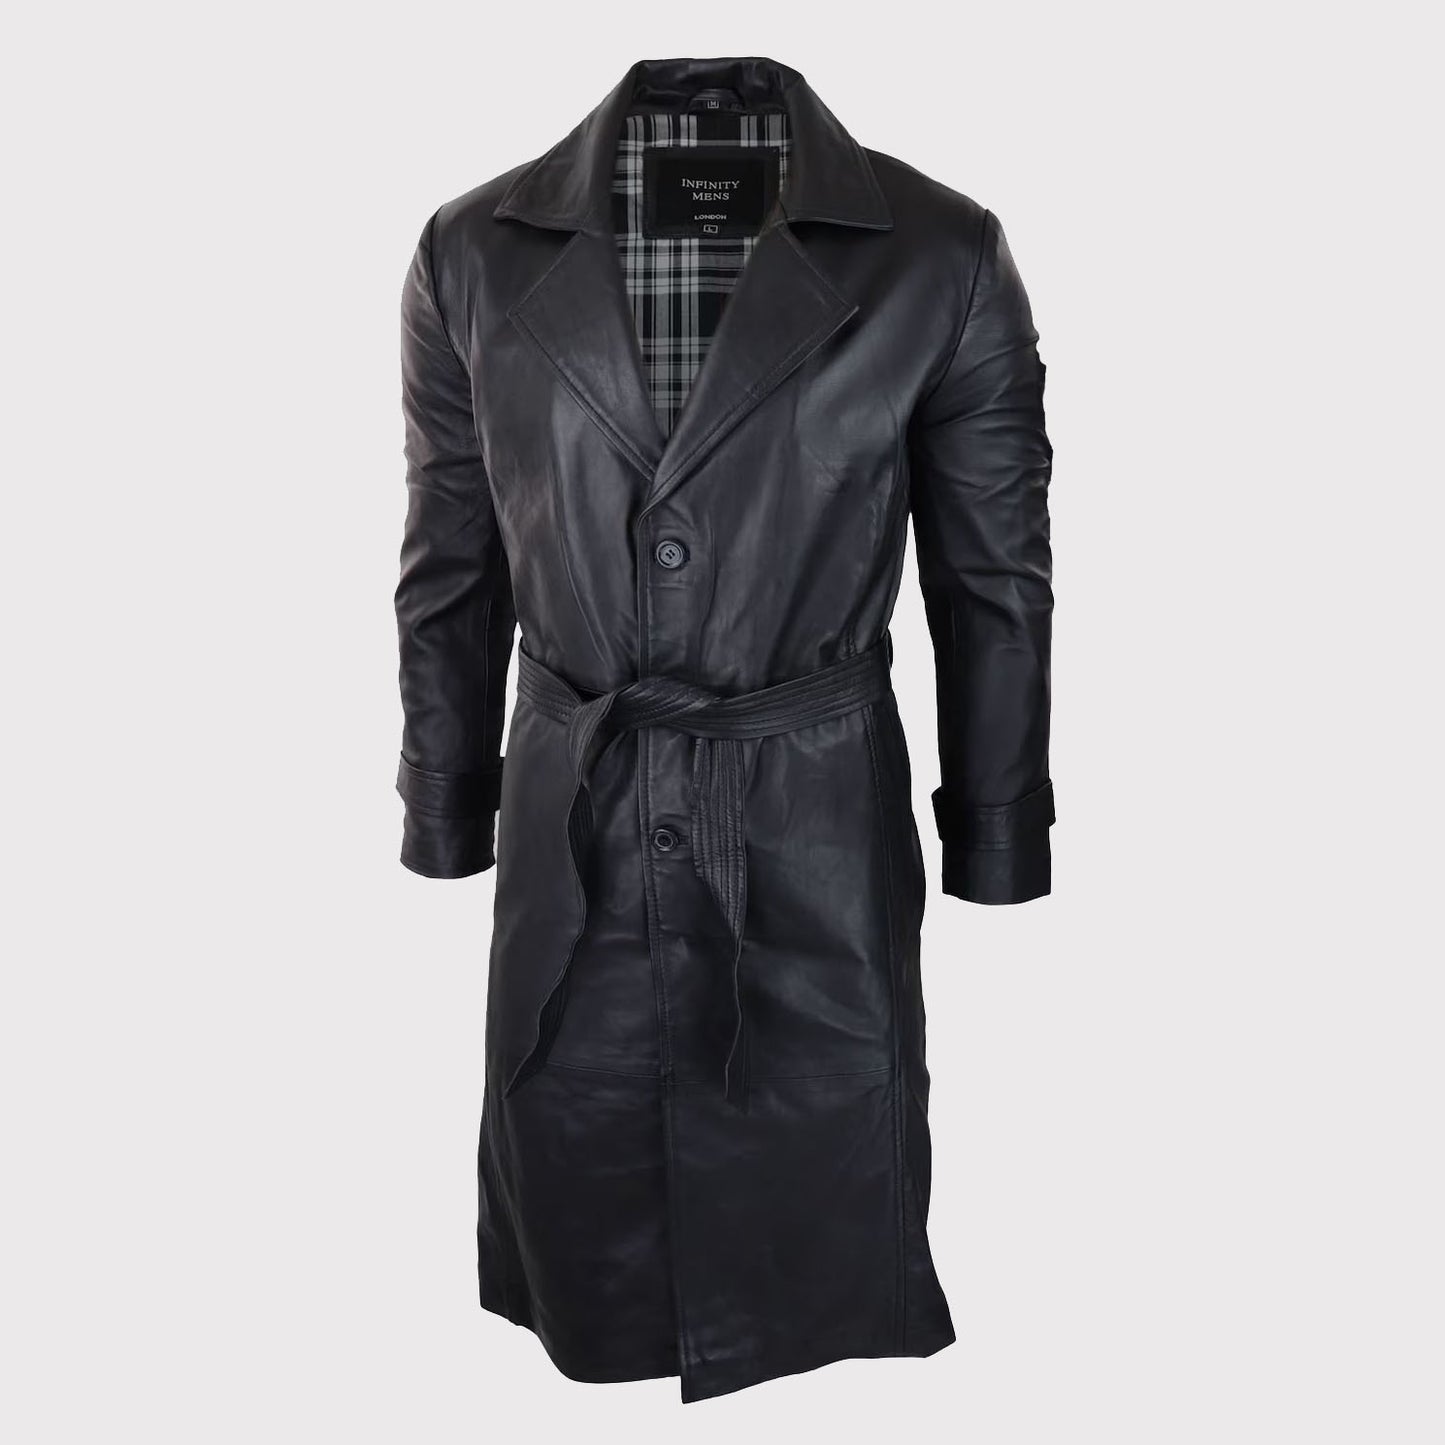 Men's Vintage 80s Style Black Long Leather Belted Punk Jacket Coat